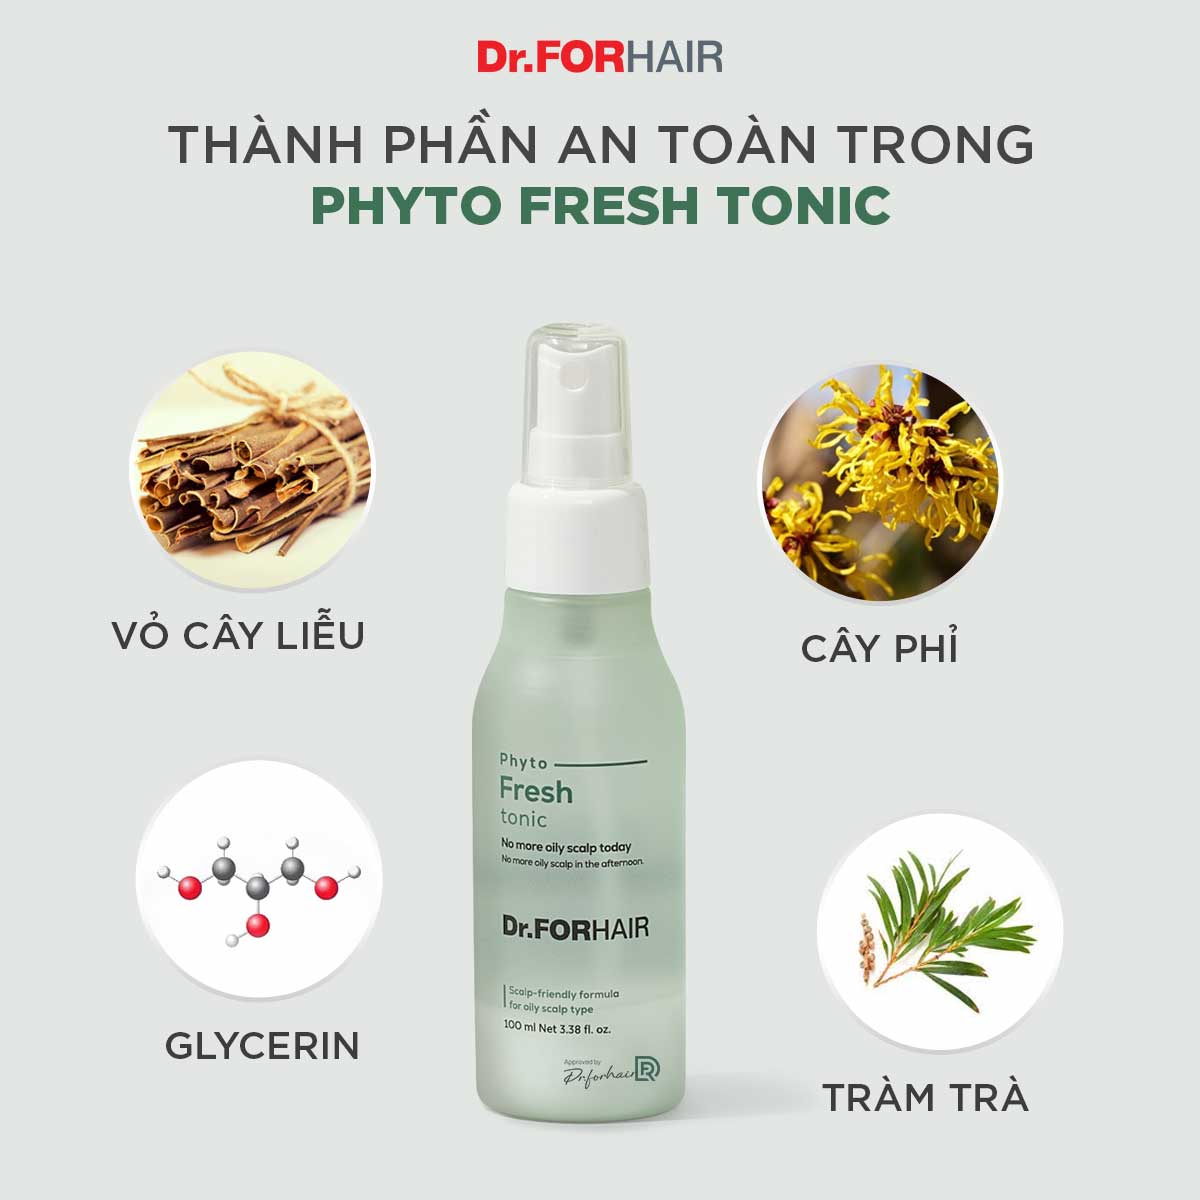 Tinh chất xịt dưỡng tóc cho tóc bết giảm dầu nhờn và mùi hôi da đầu Dr.FORHAIR Phyto Fresh Tonic 100ml